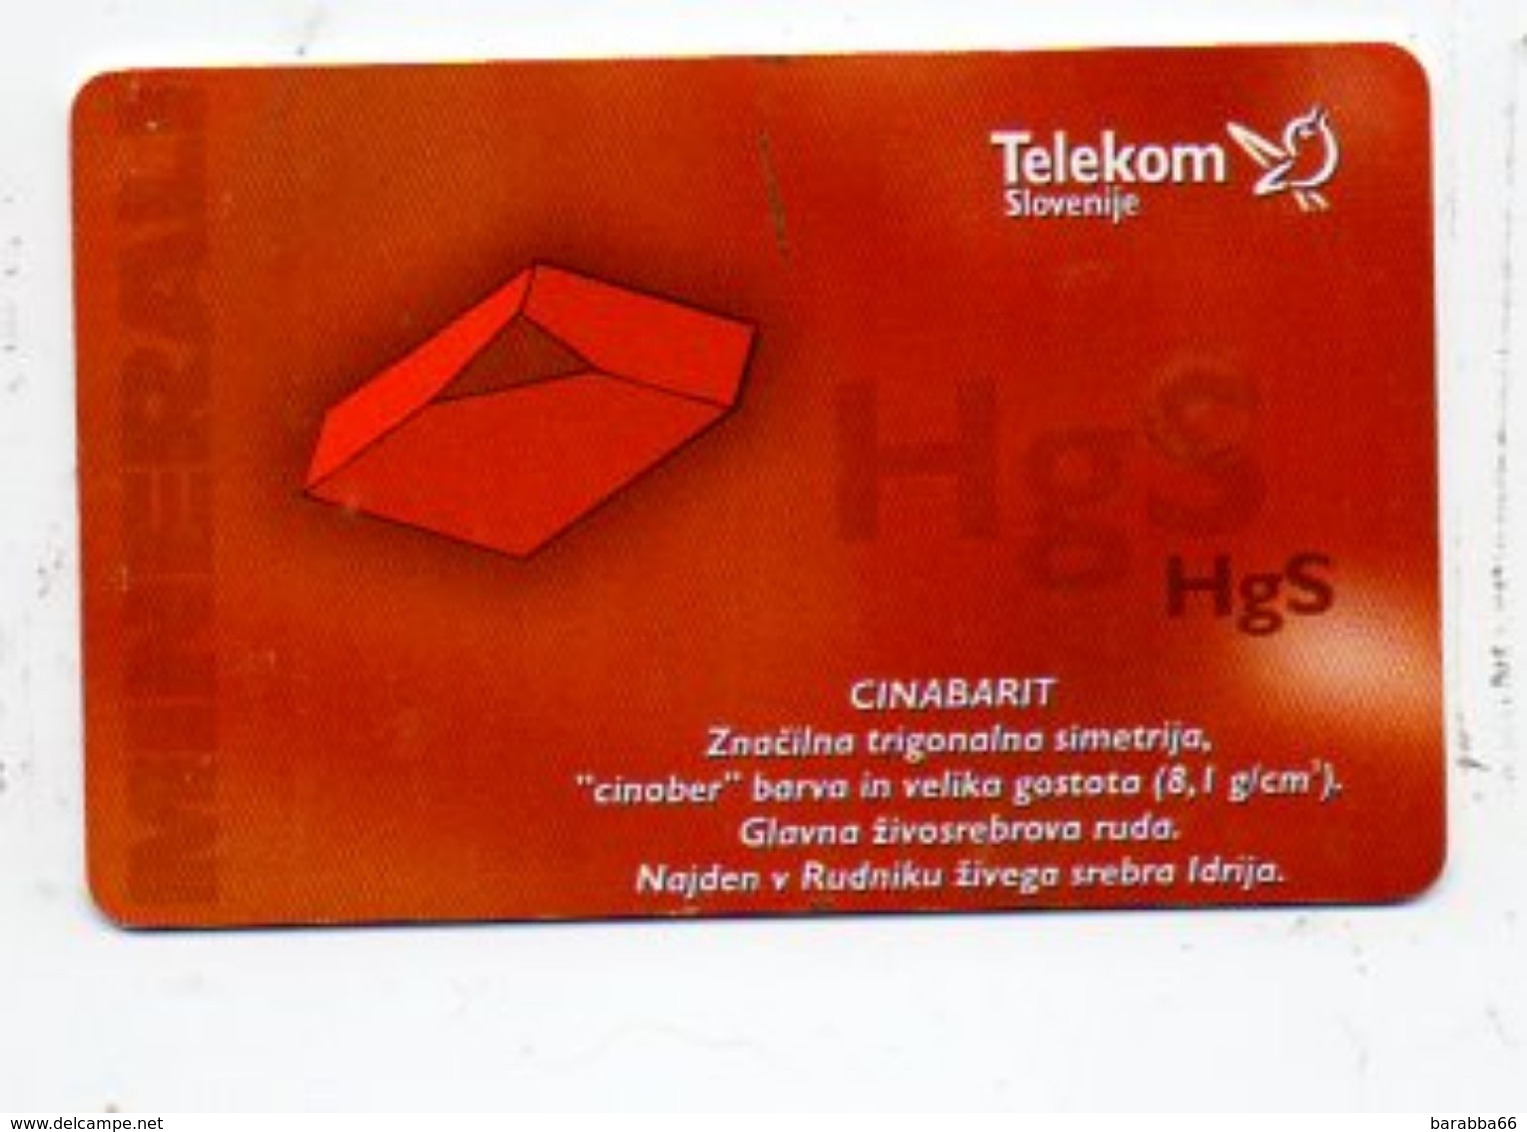 Telekom Slovenije 300 Imp. Phonecard - Slovenia